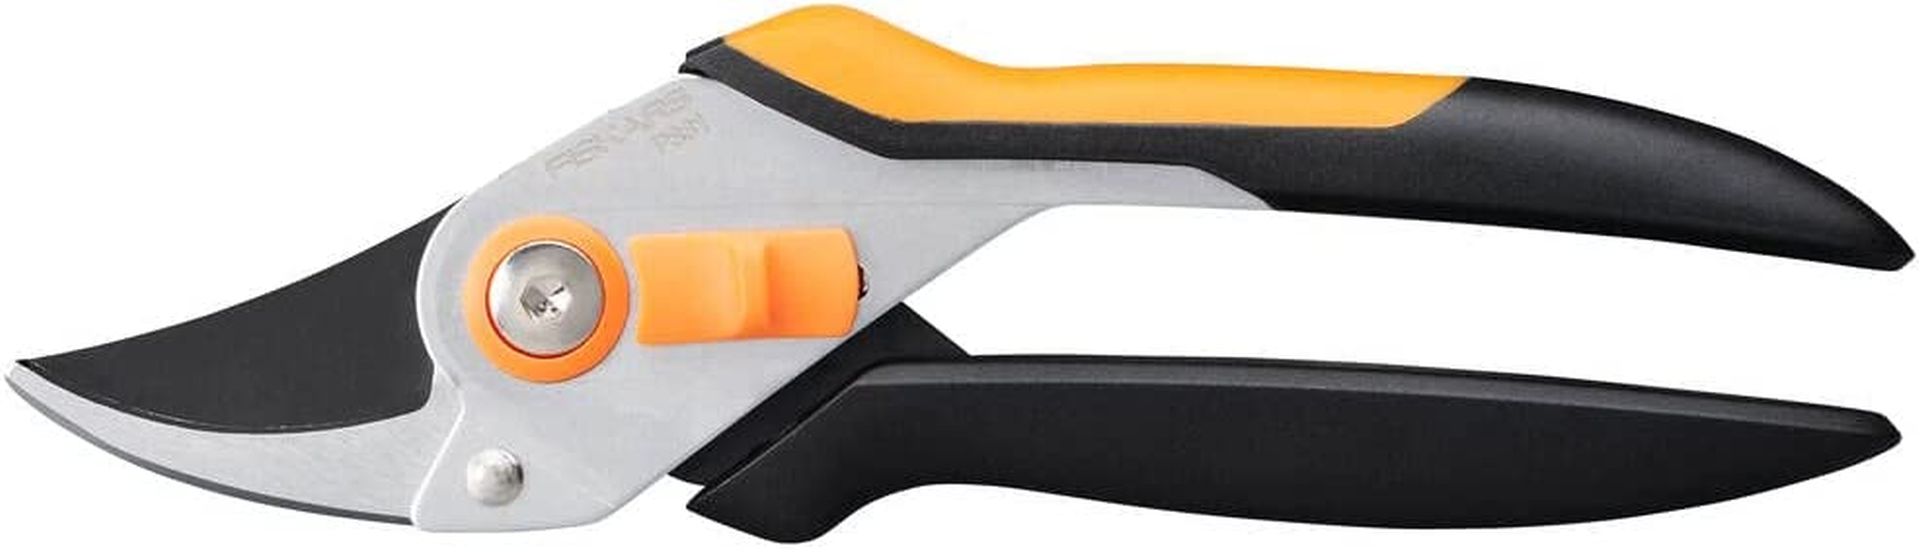 Fiskars Solid P331 Dvoučepelové zahradní nůžky kovové, 19,7cm 1057163